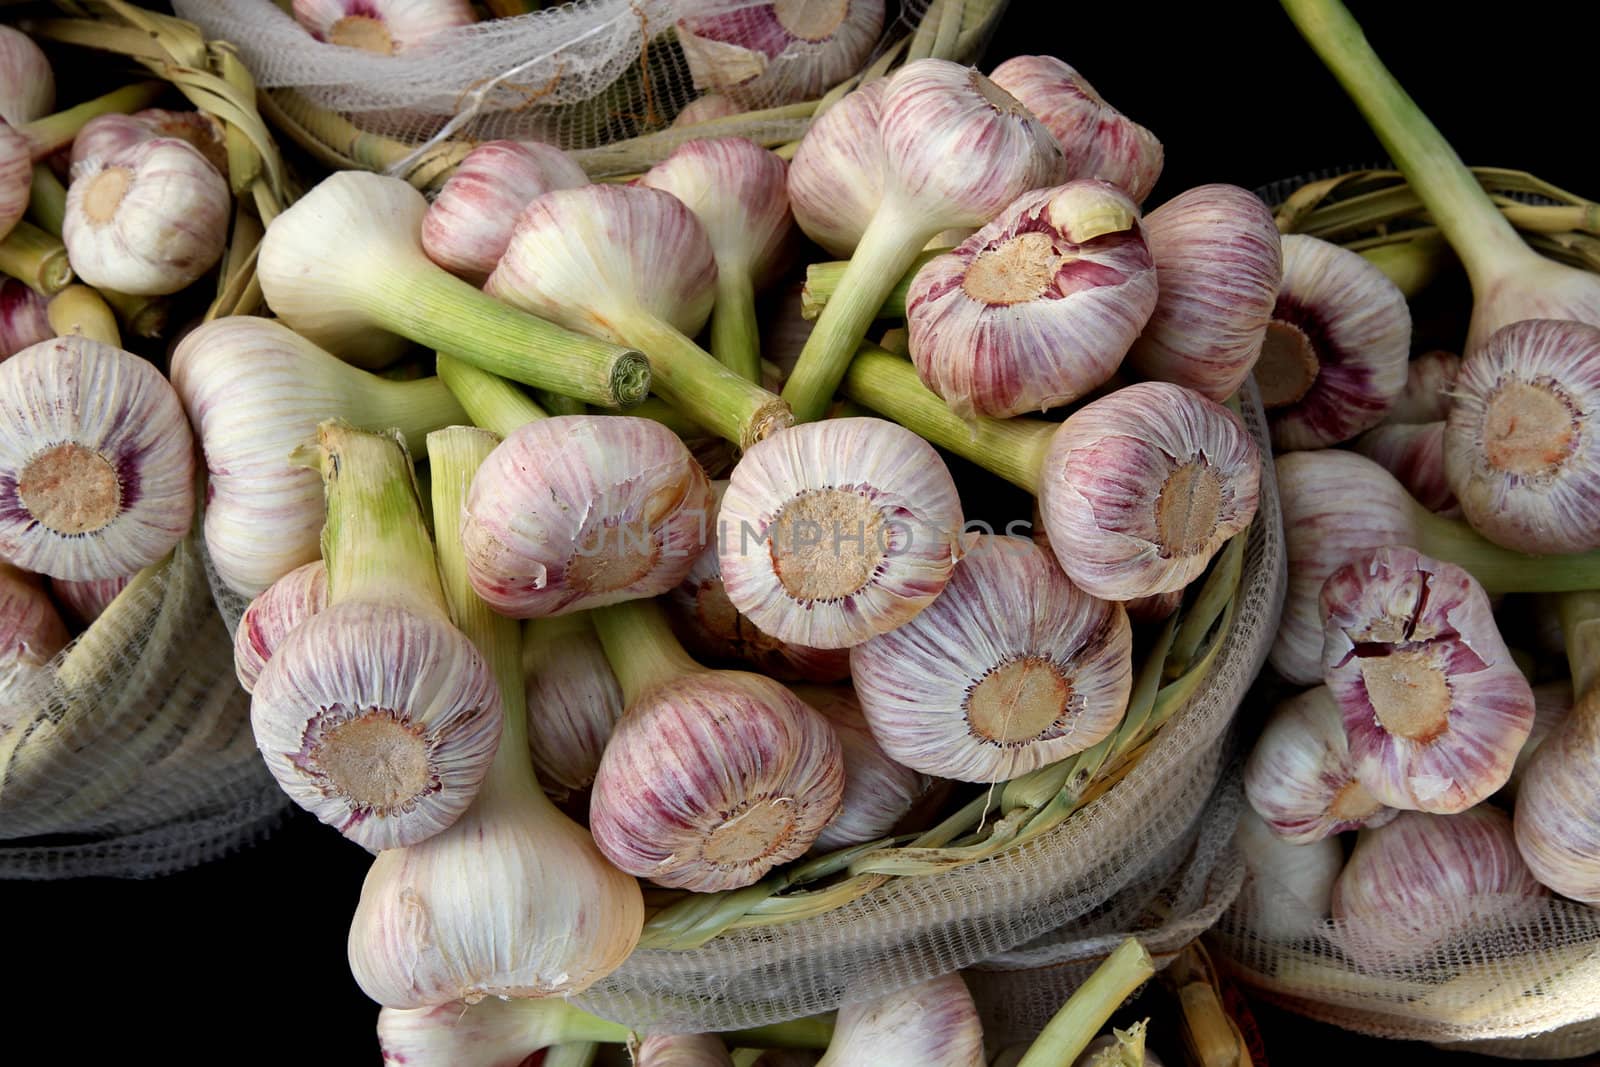 fresch garlic from the farm  by jonnysek